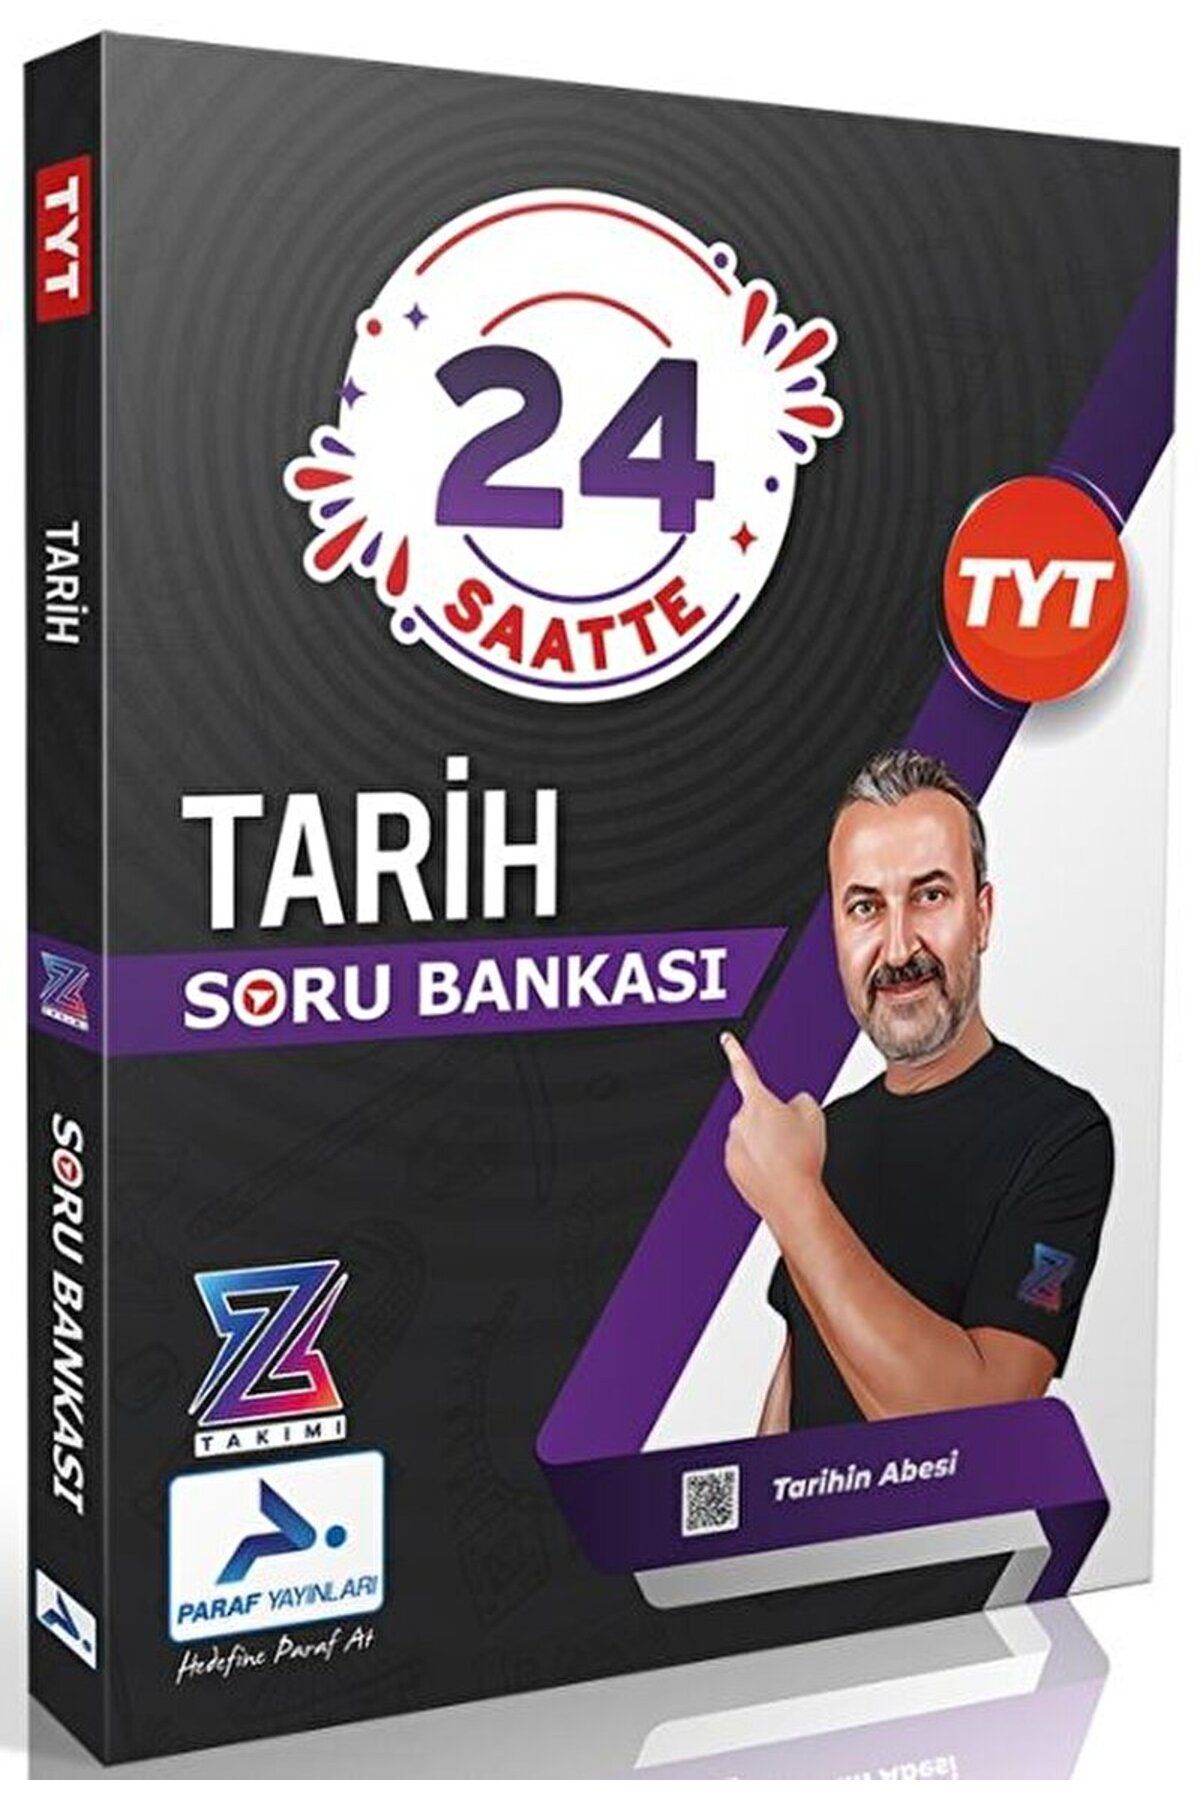 PRF Paraf Yayınları Tarihin Abesi Z Takımı TYT Tarih Video Soru Bankası / Kolektif / Paraf Yayınları / 9786257423922